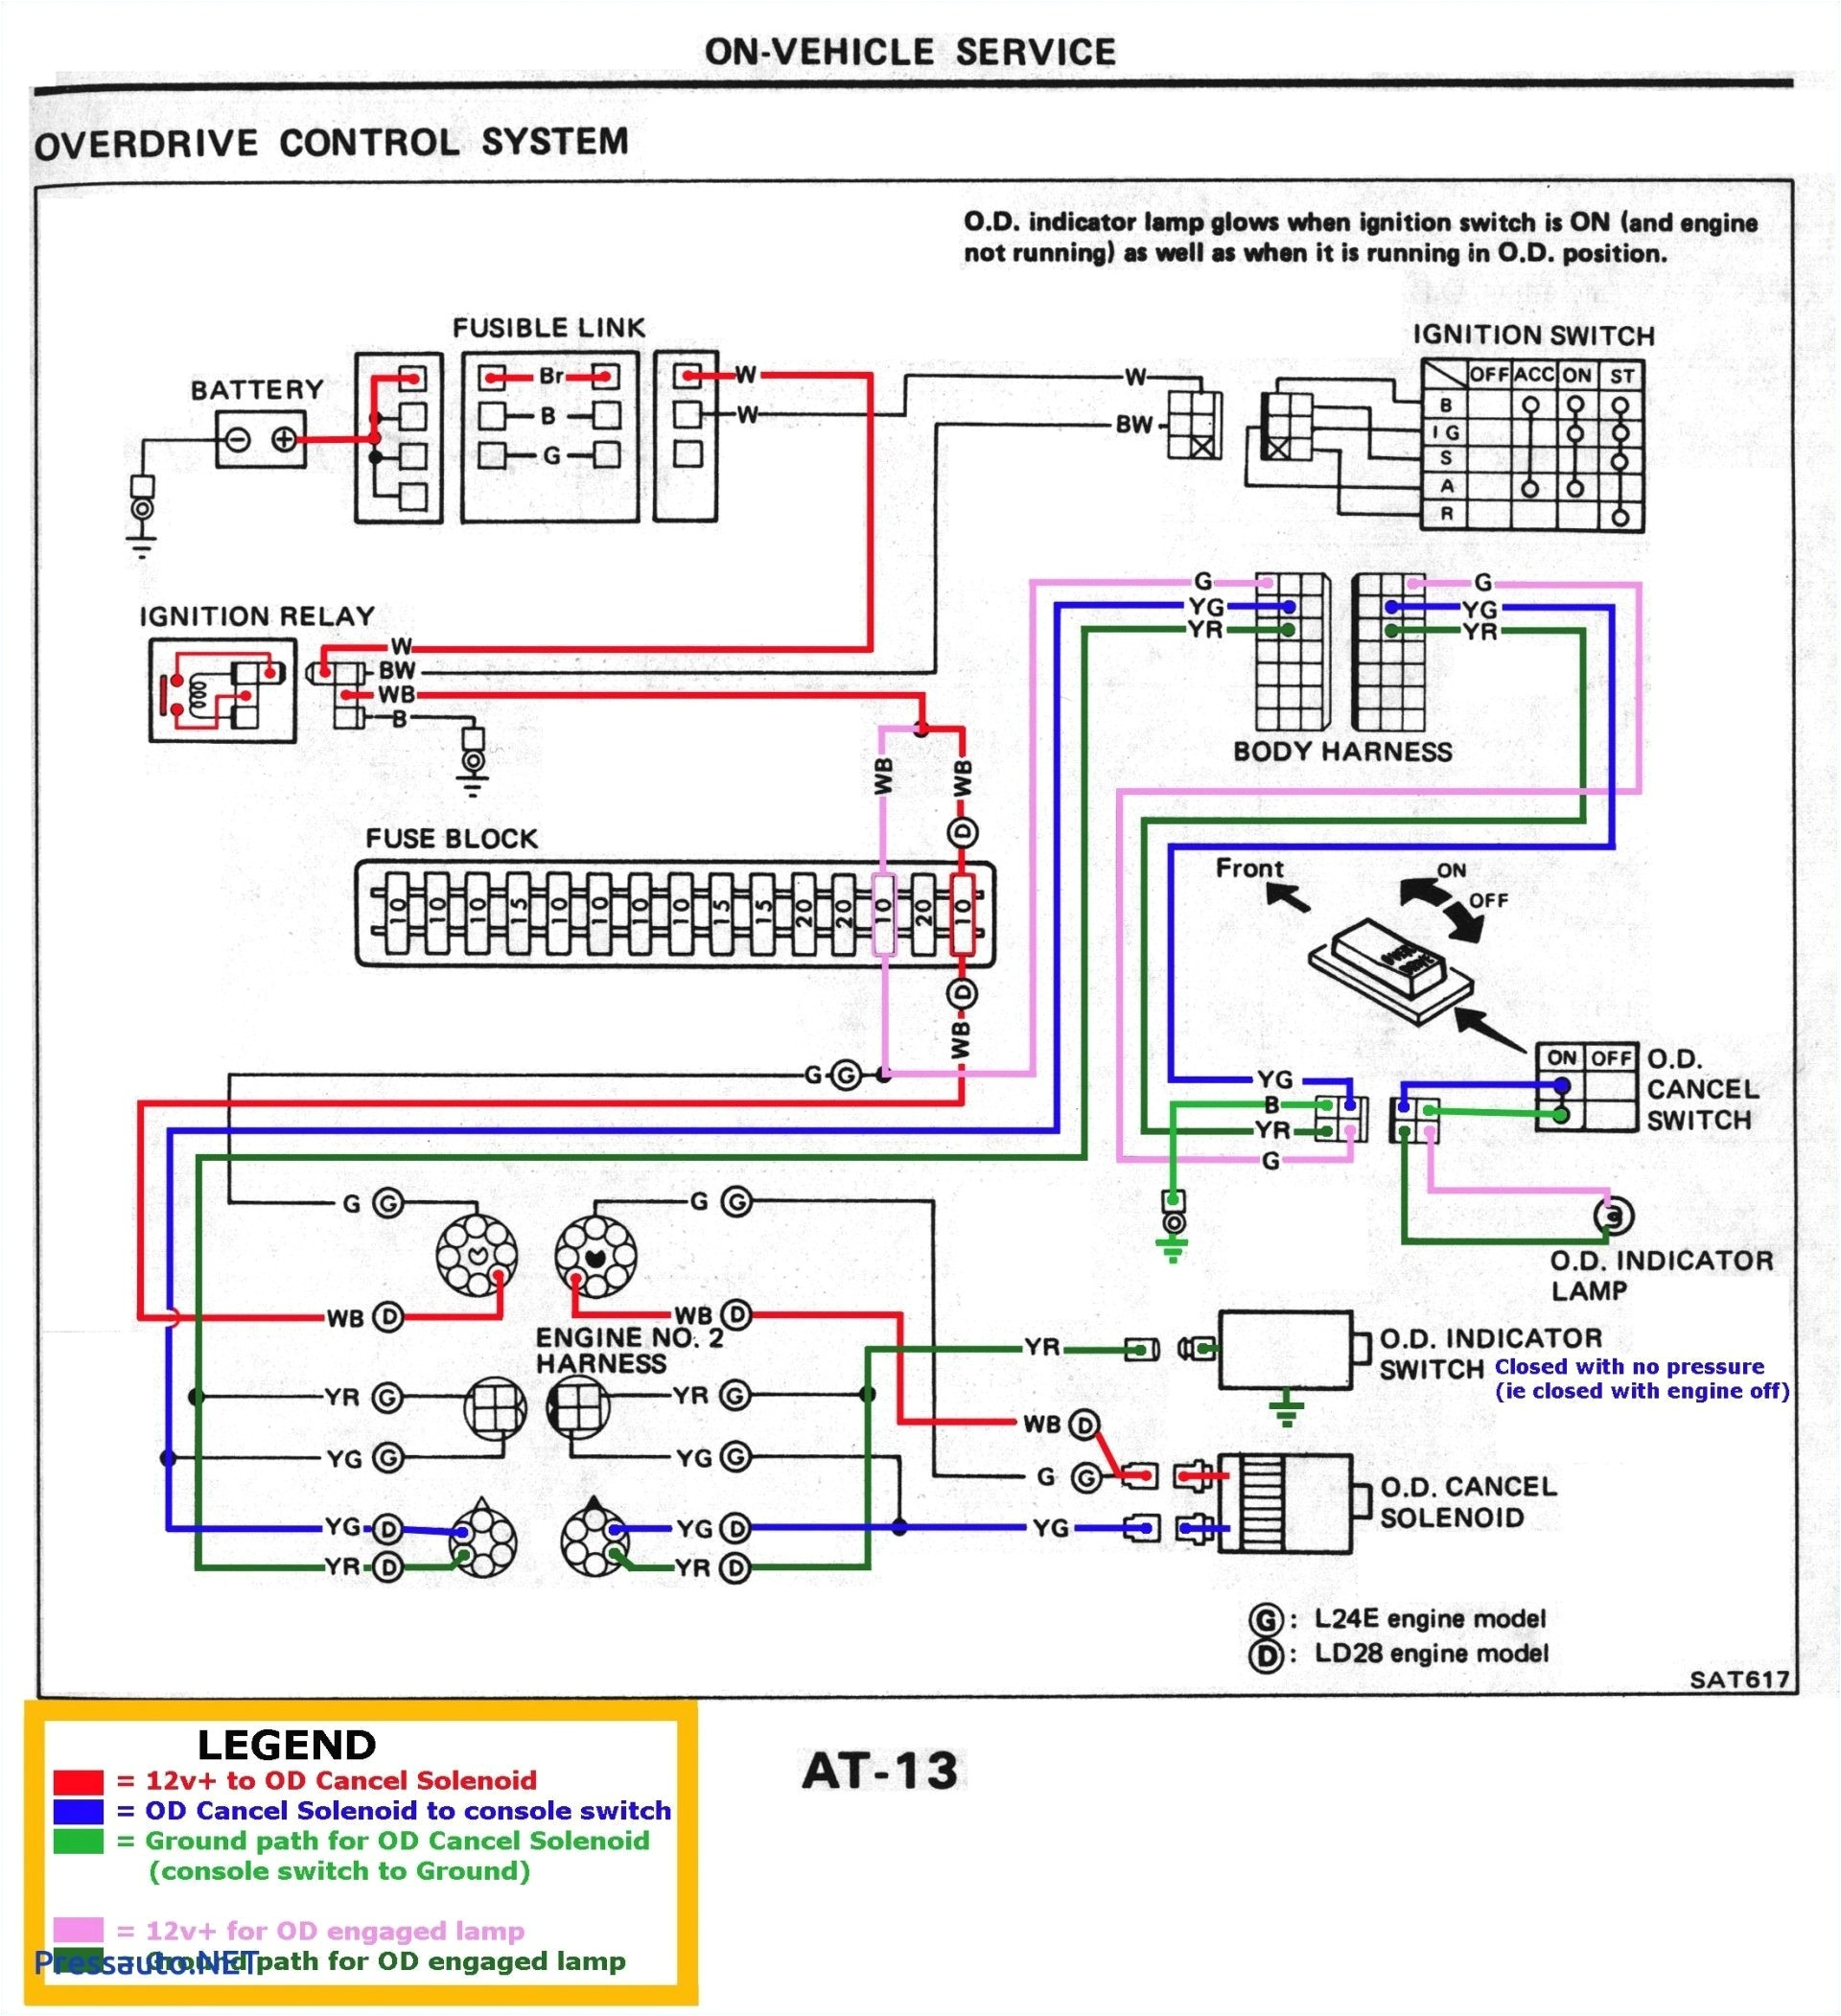 rubbermaid wiring diagrams wiring diagram fascinating extech wiring diagrams wiring diagram name rubbermaid wiring diagrams